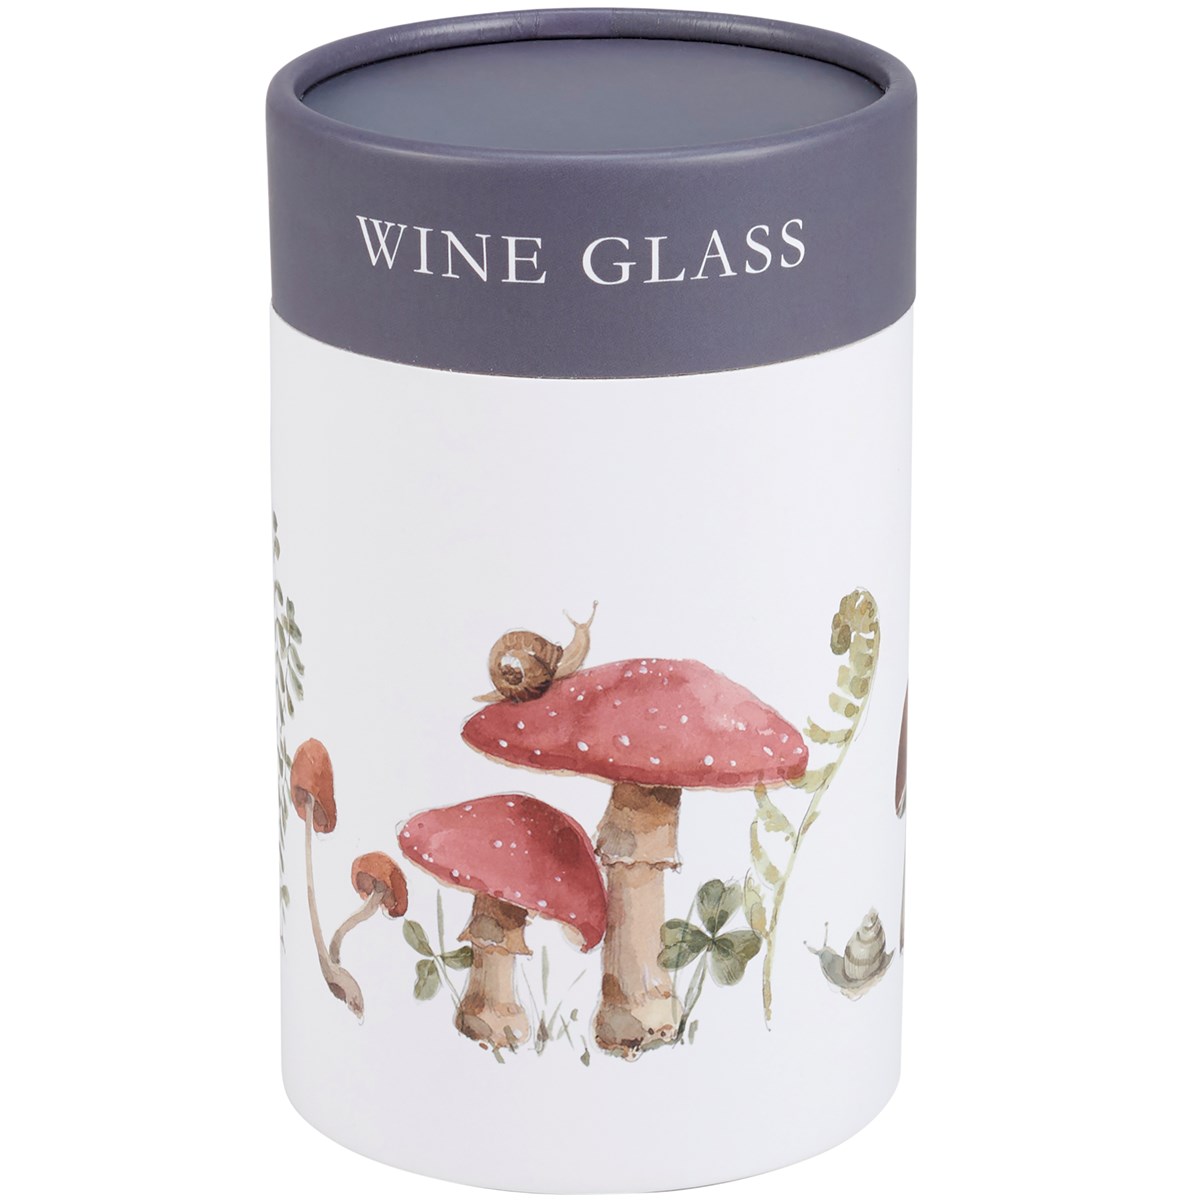 Mushroom Study Wine Glass - Glass